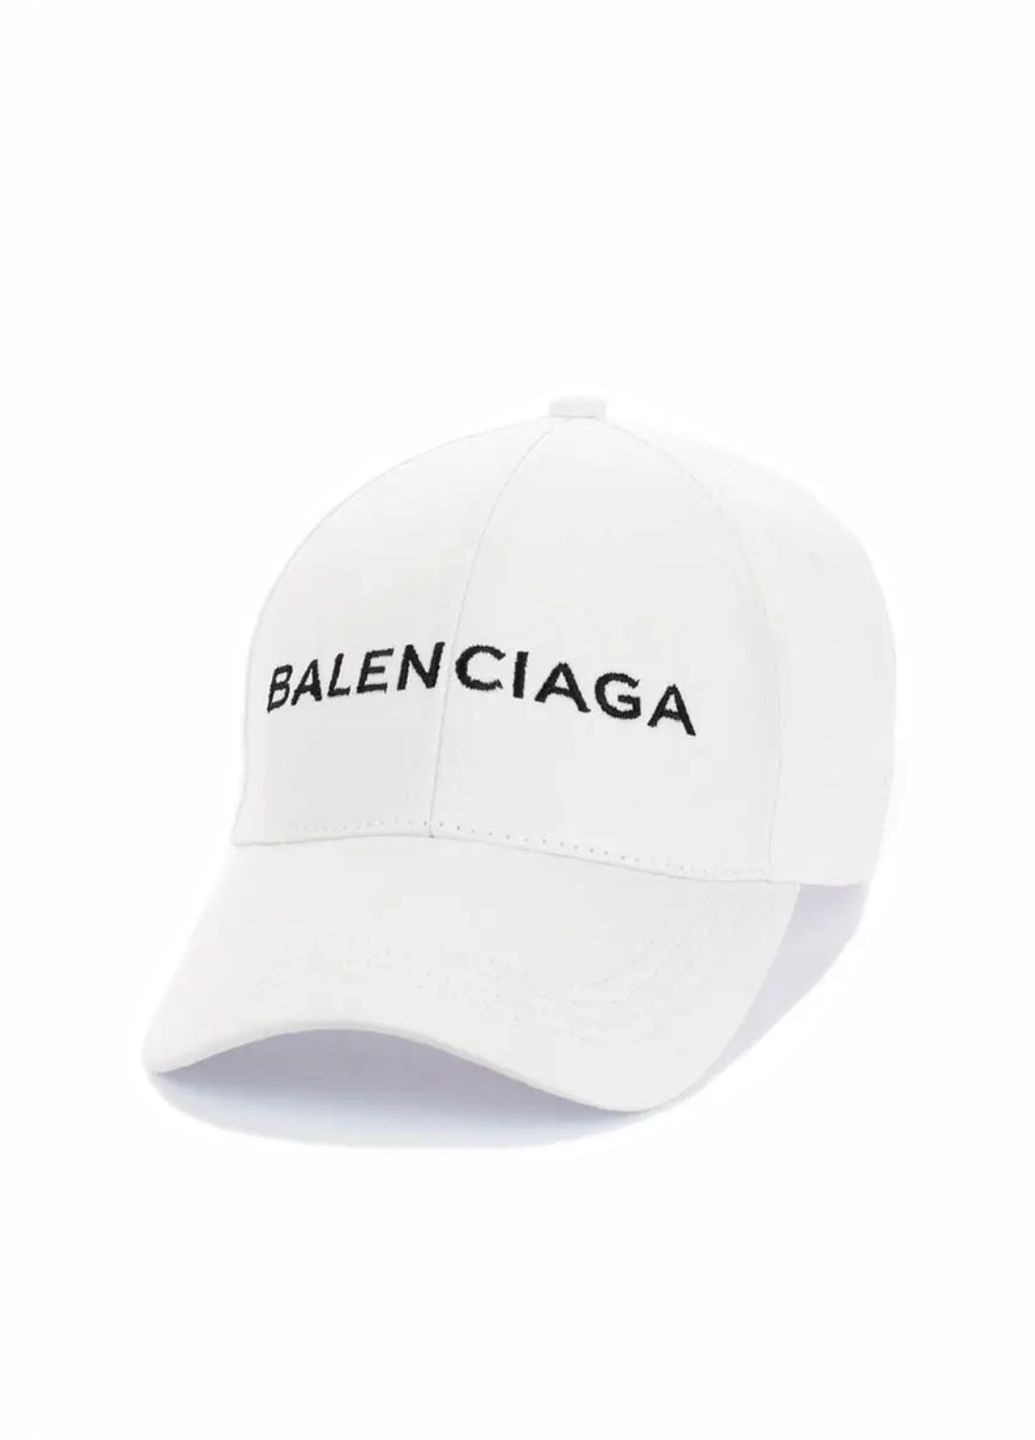 Кепка молодежная Balenciaga / Баленсиага S/M No Brand кепка унісекс (280929027)